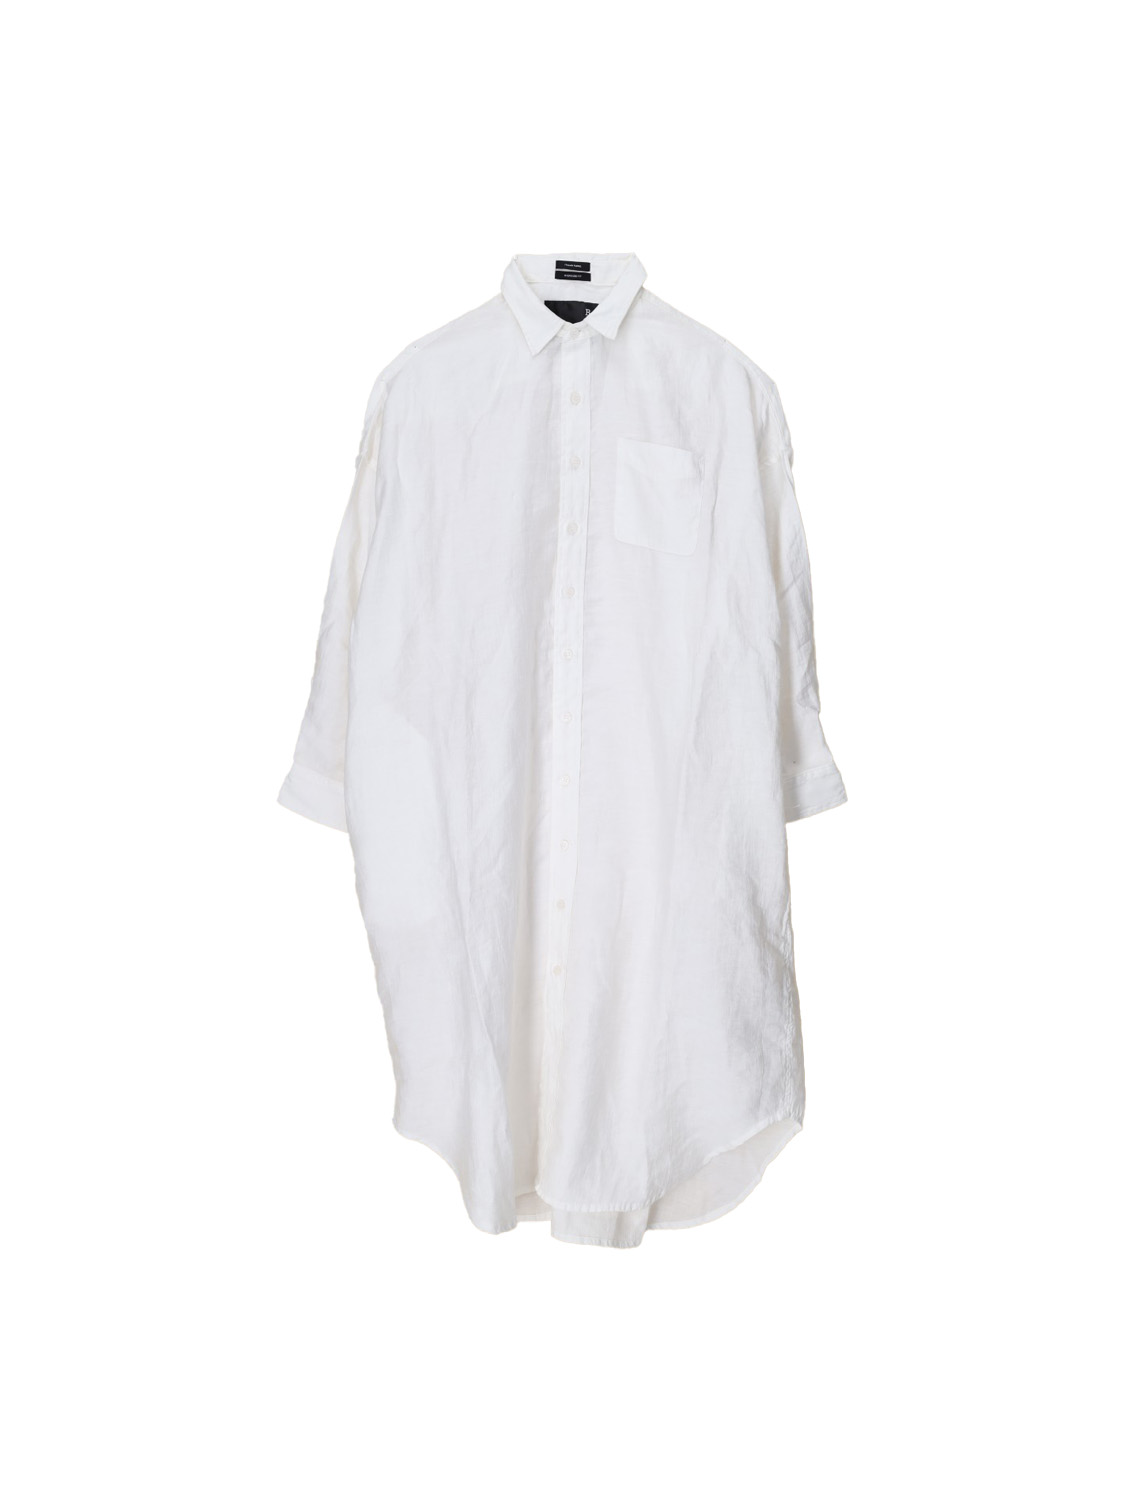 Jumbo – Oversized blouse dress made from a linen blend 